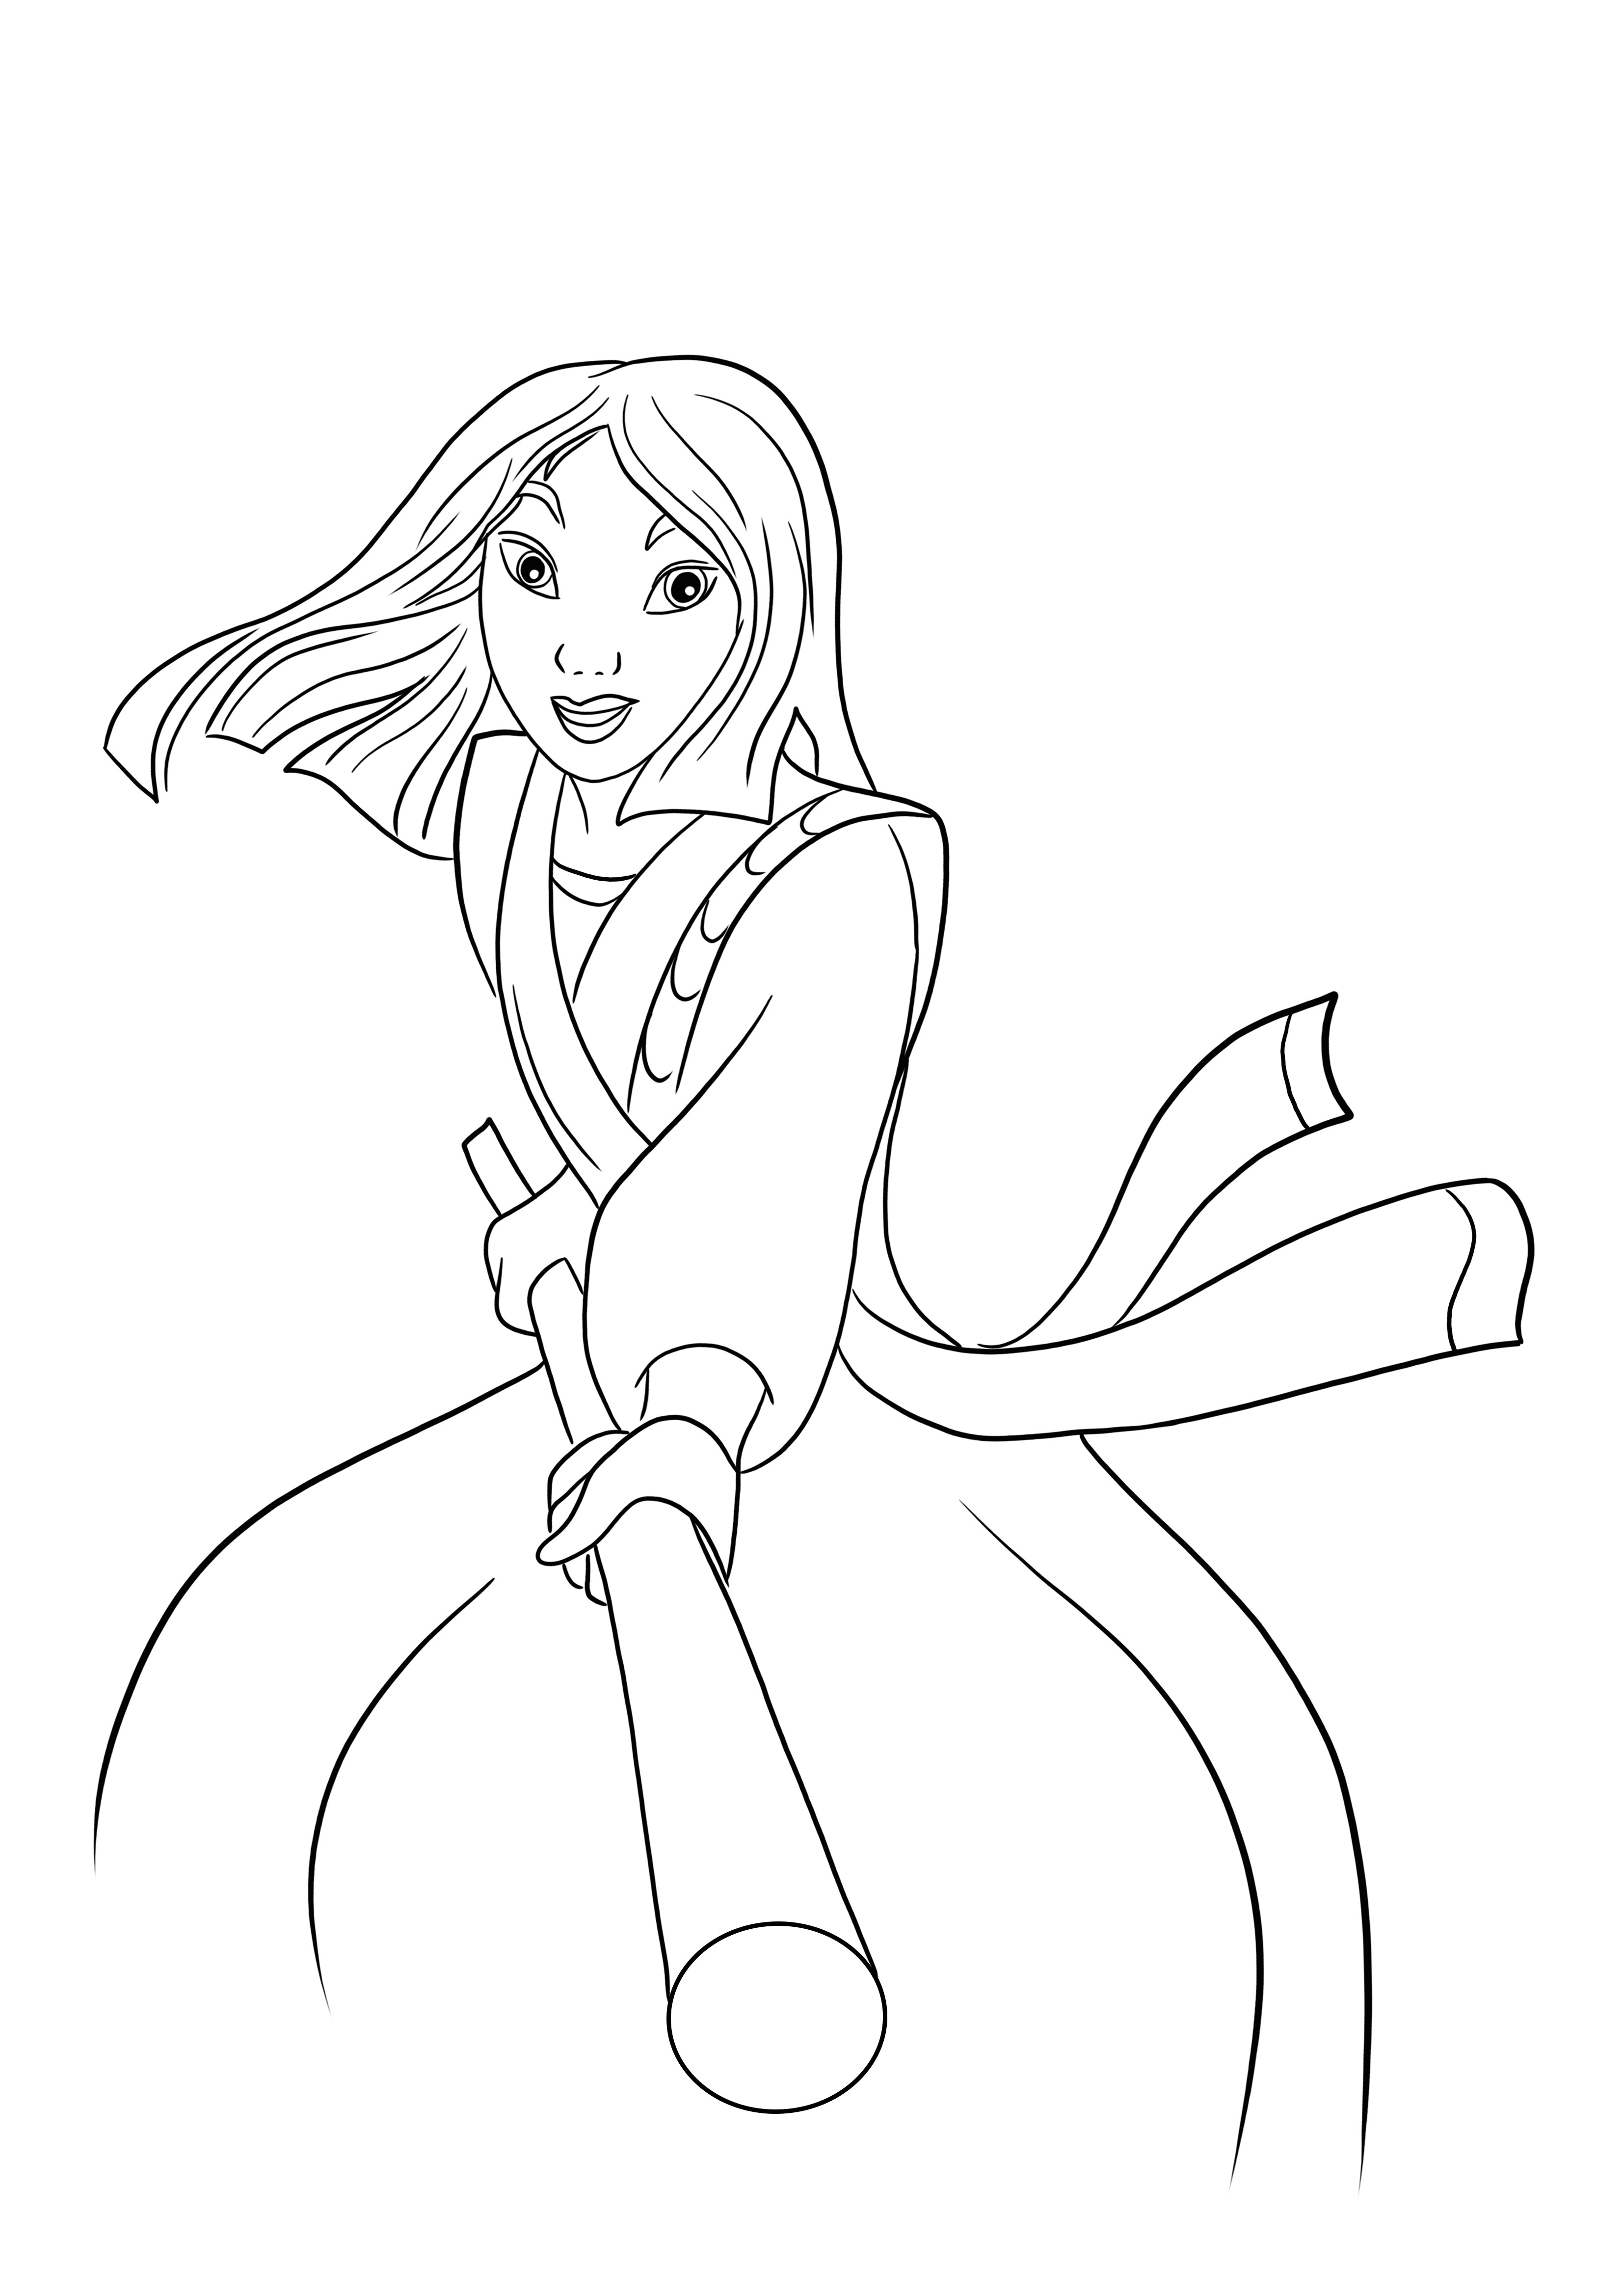 Ecco un download gratuito dell'immagine di combattimento della principessa Mulan da colorare facilmente